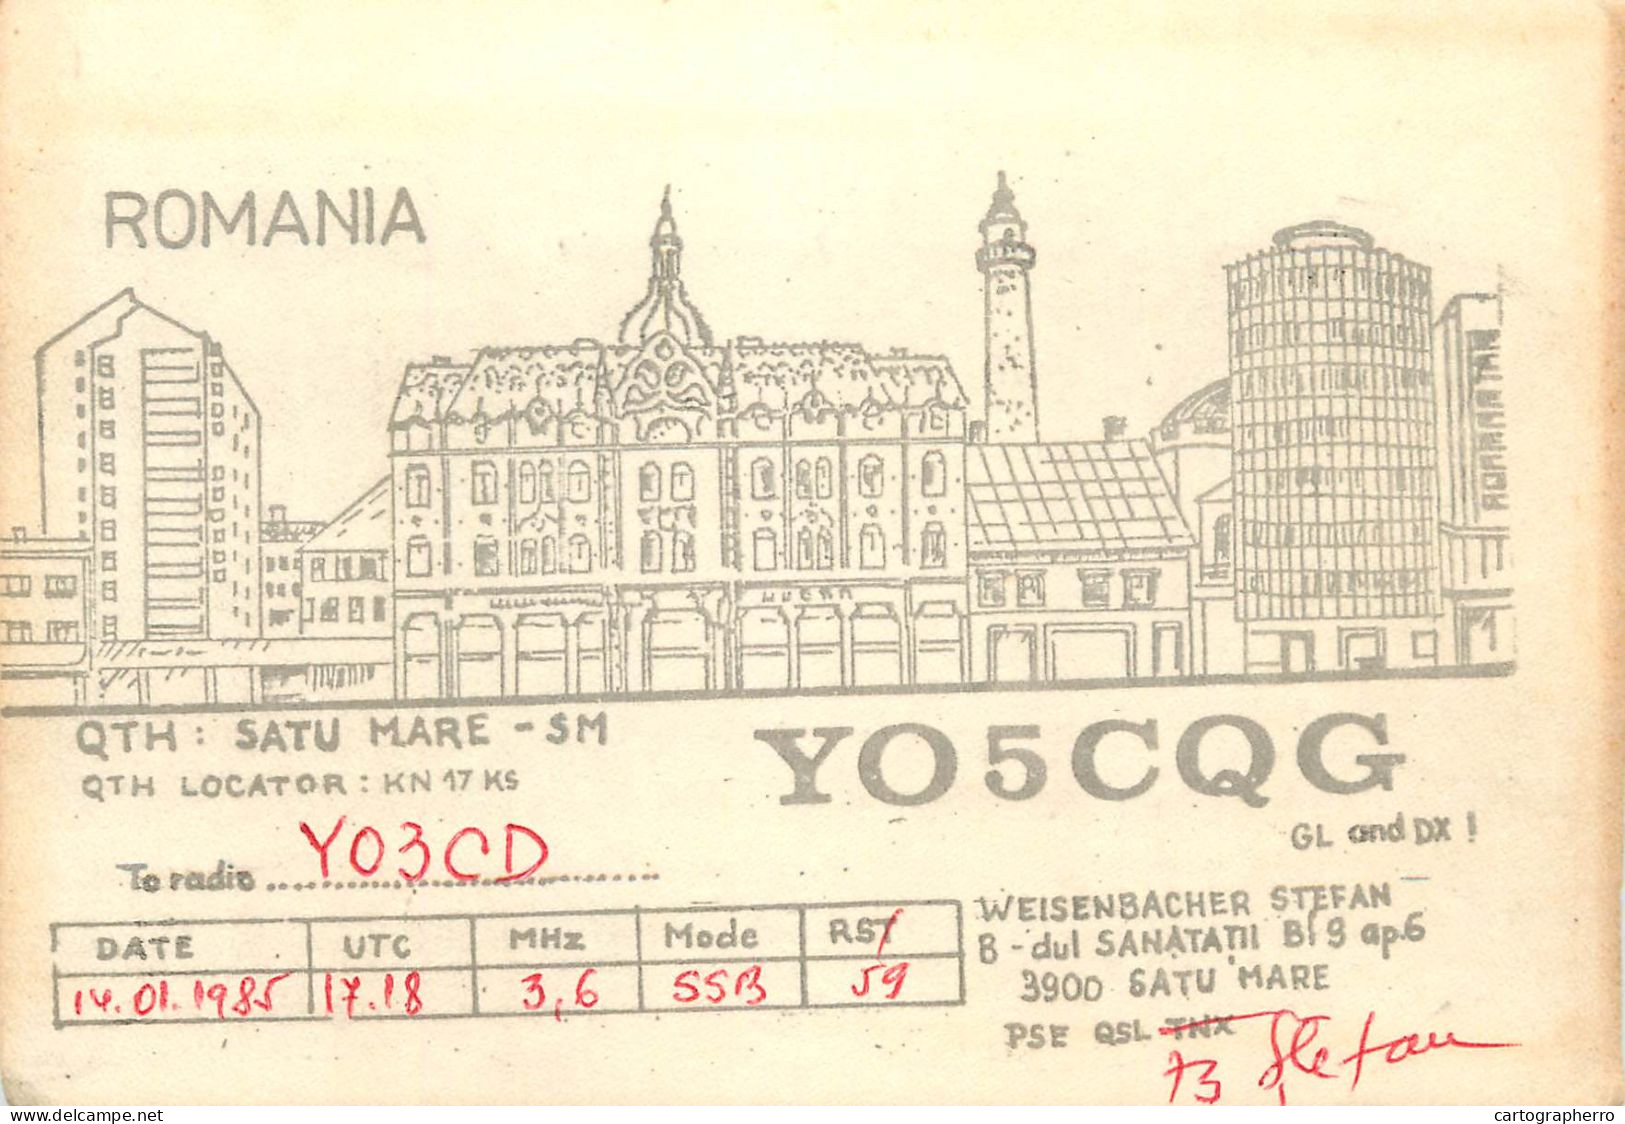 Romania Radio Amateur QSL Post Card Y05CQC Y03CD - Radio Amatoriale